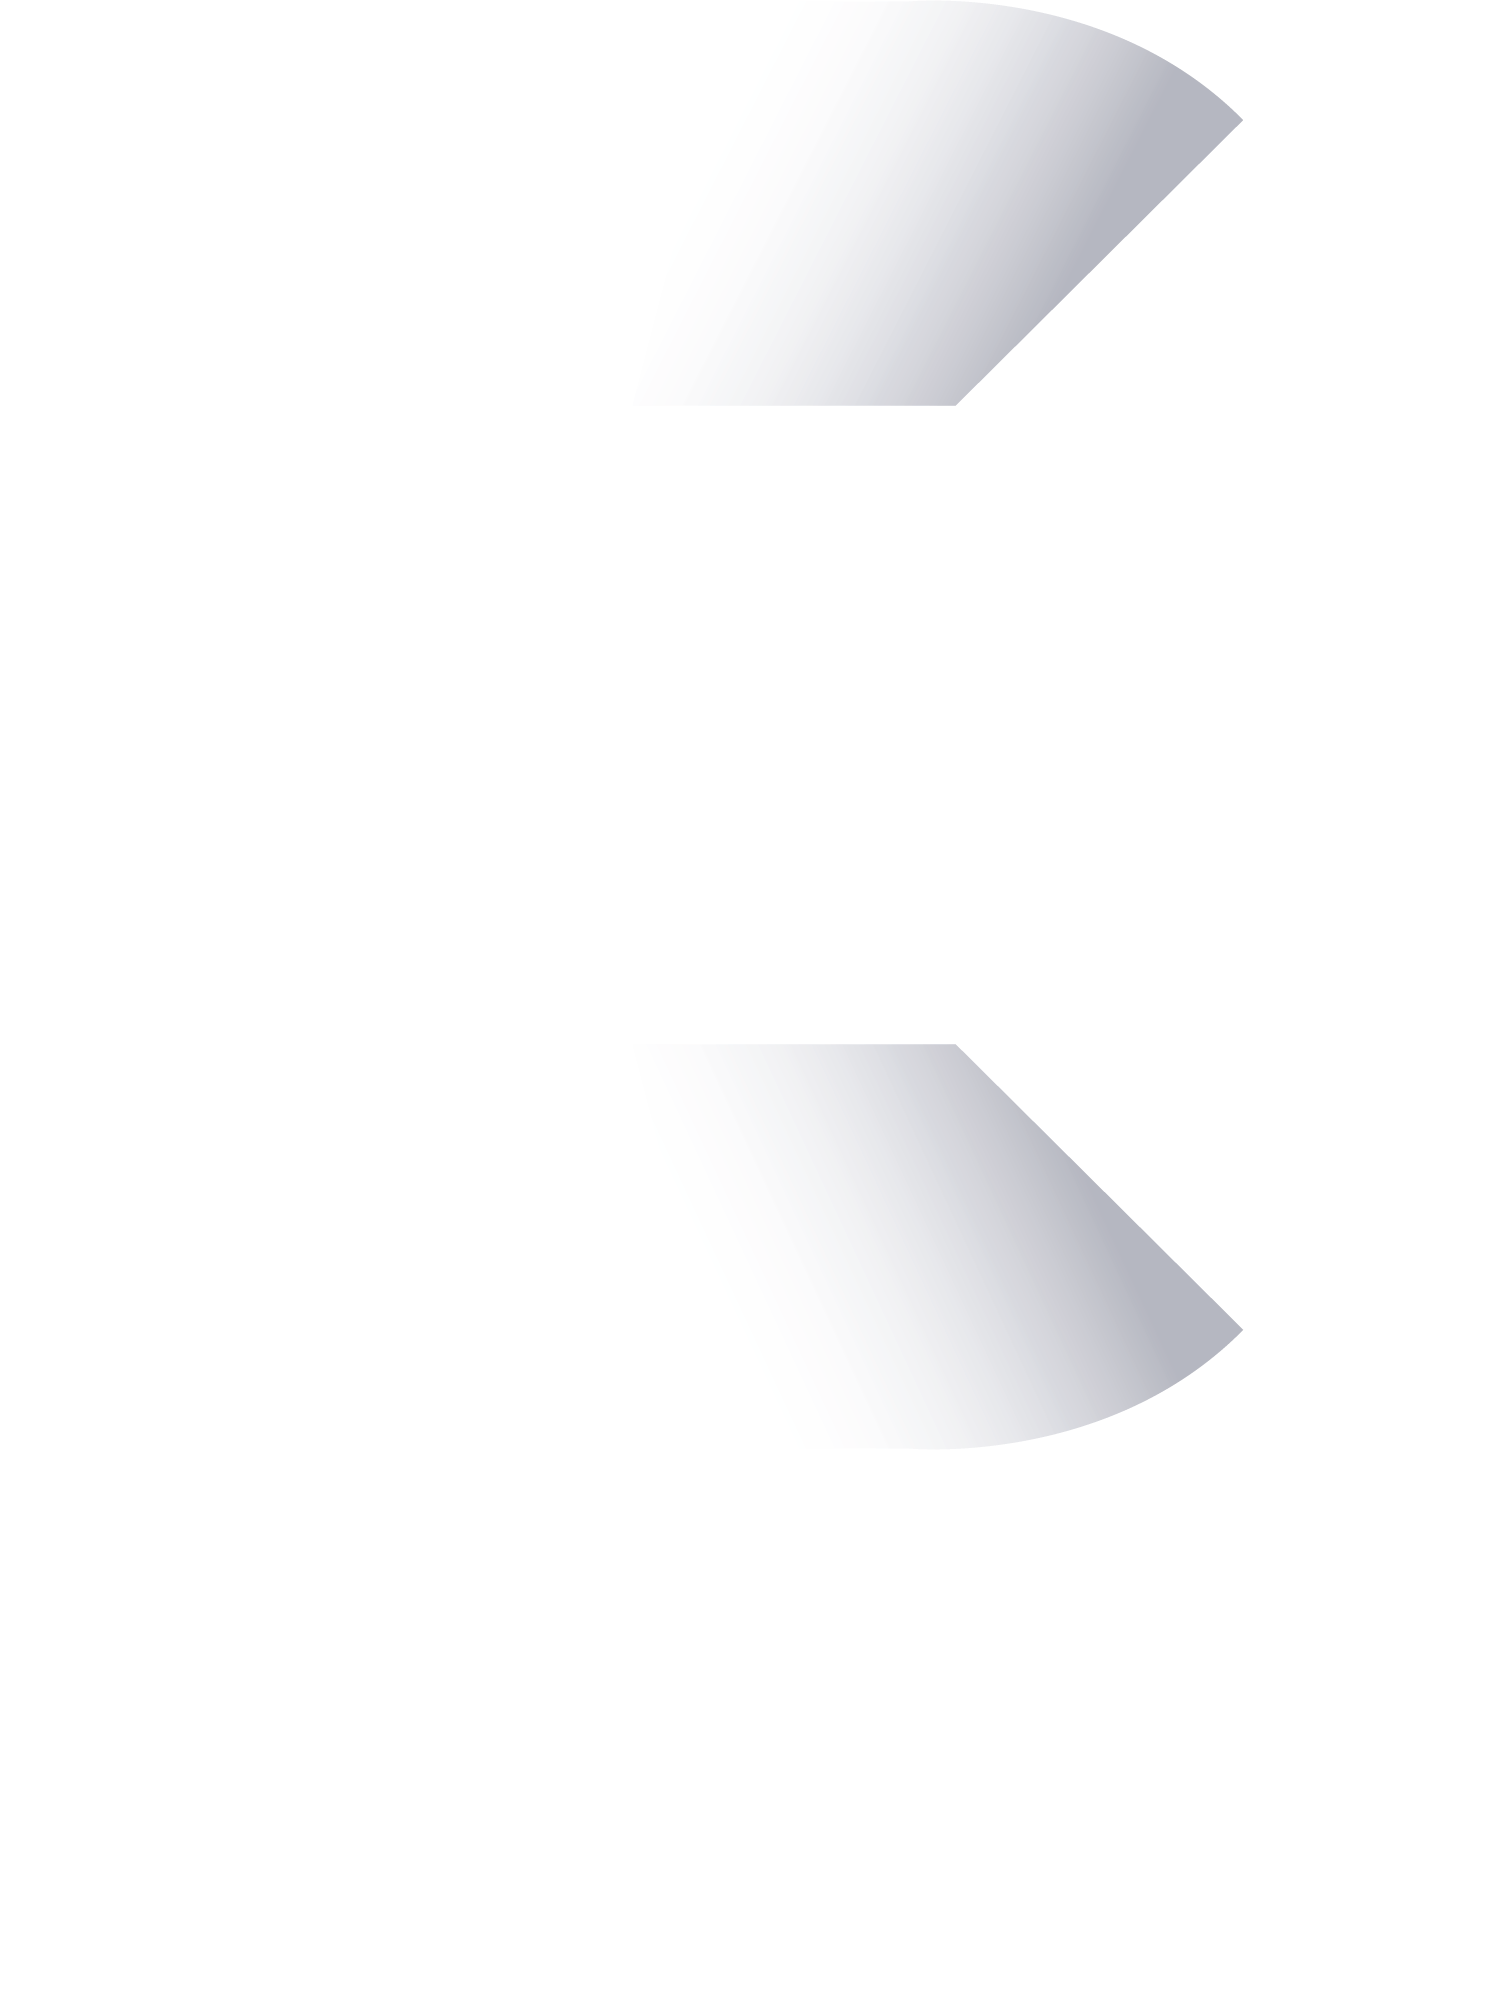 bangkoklawtutor logo